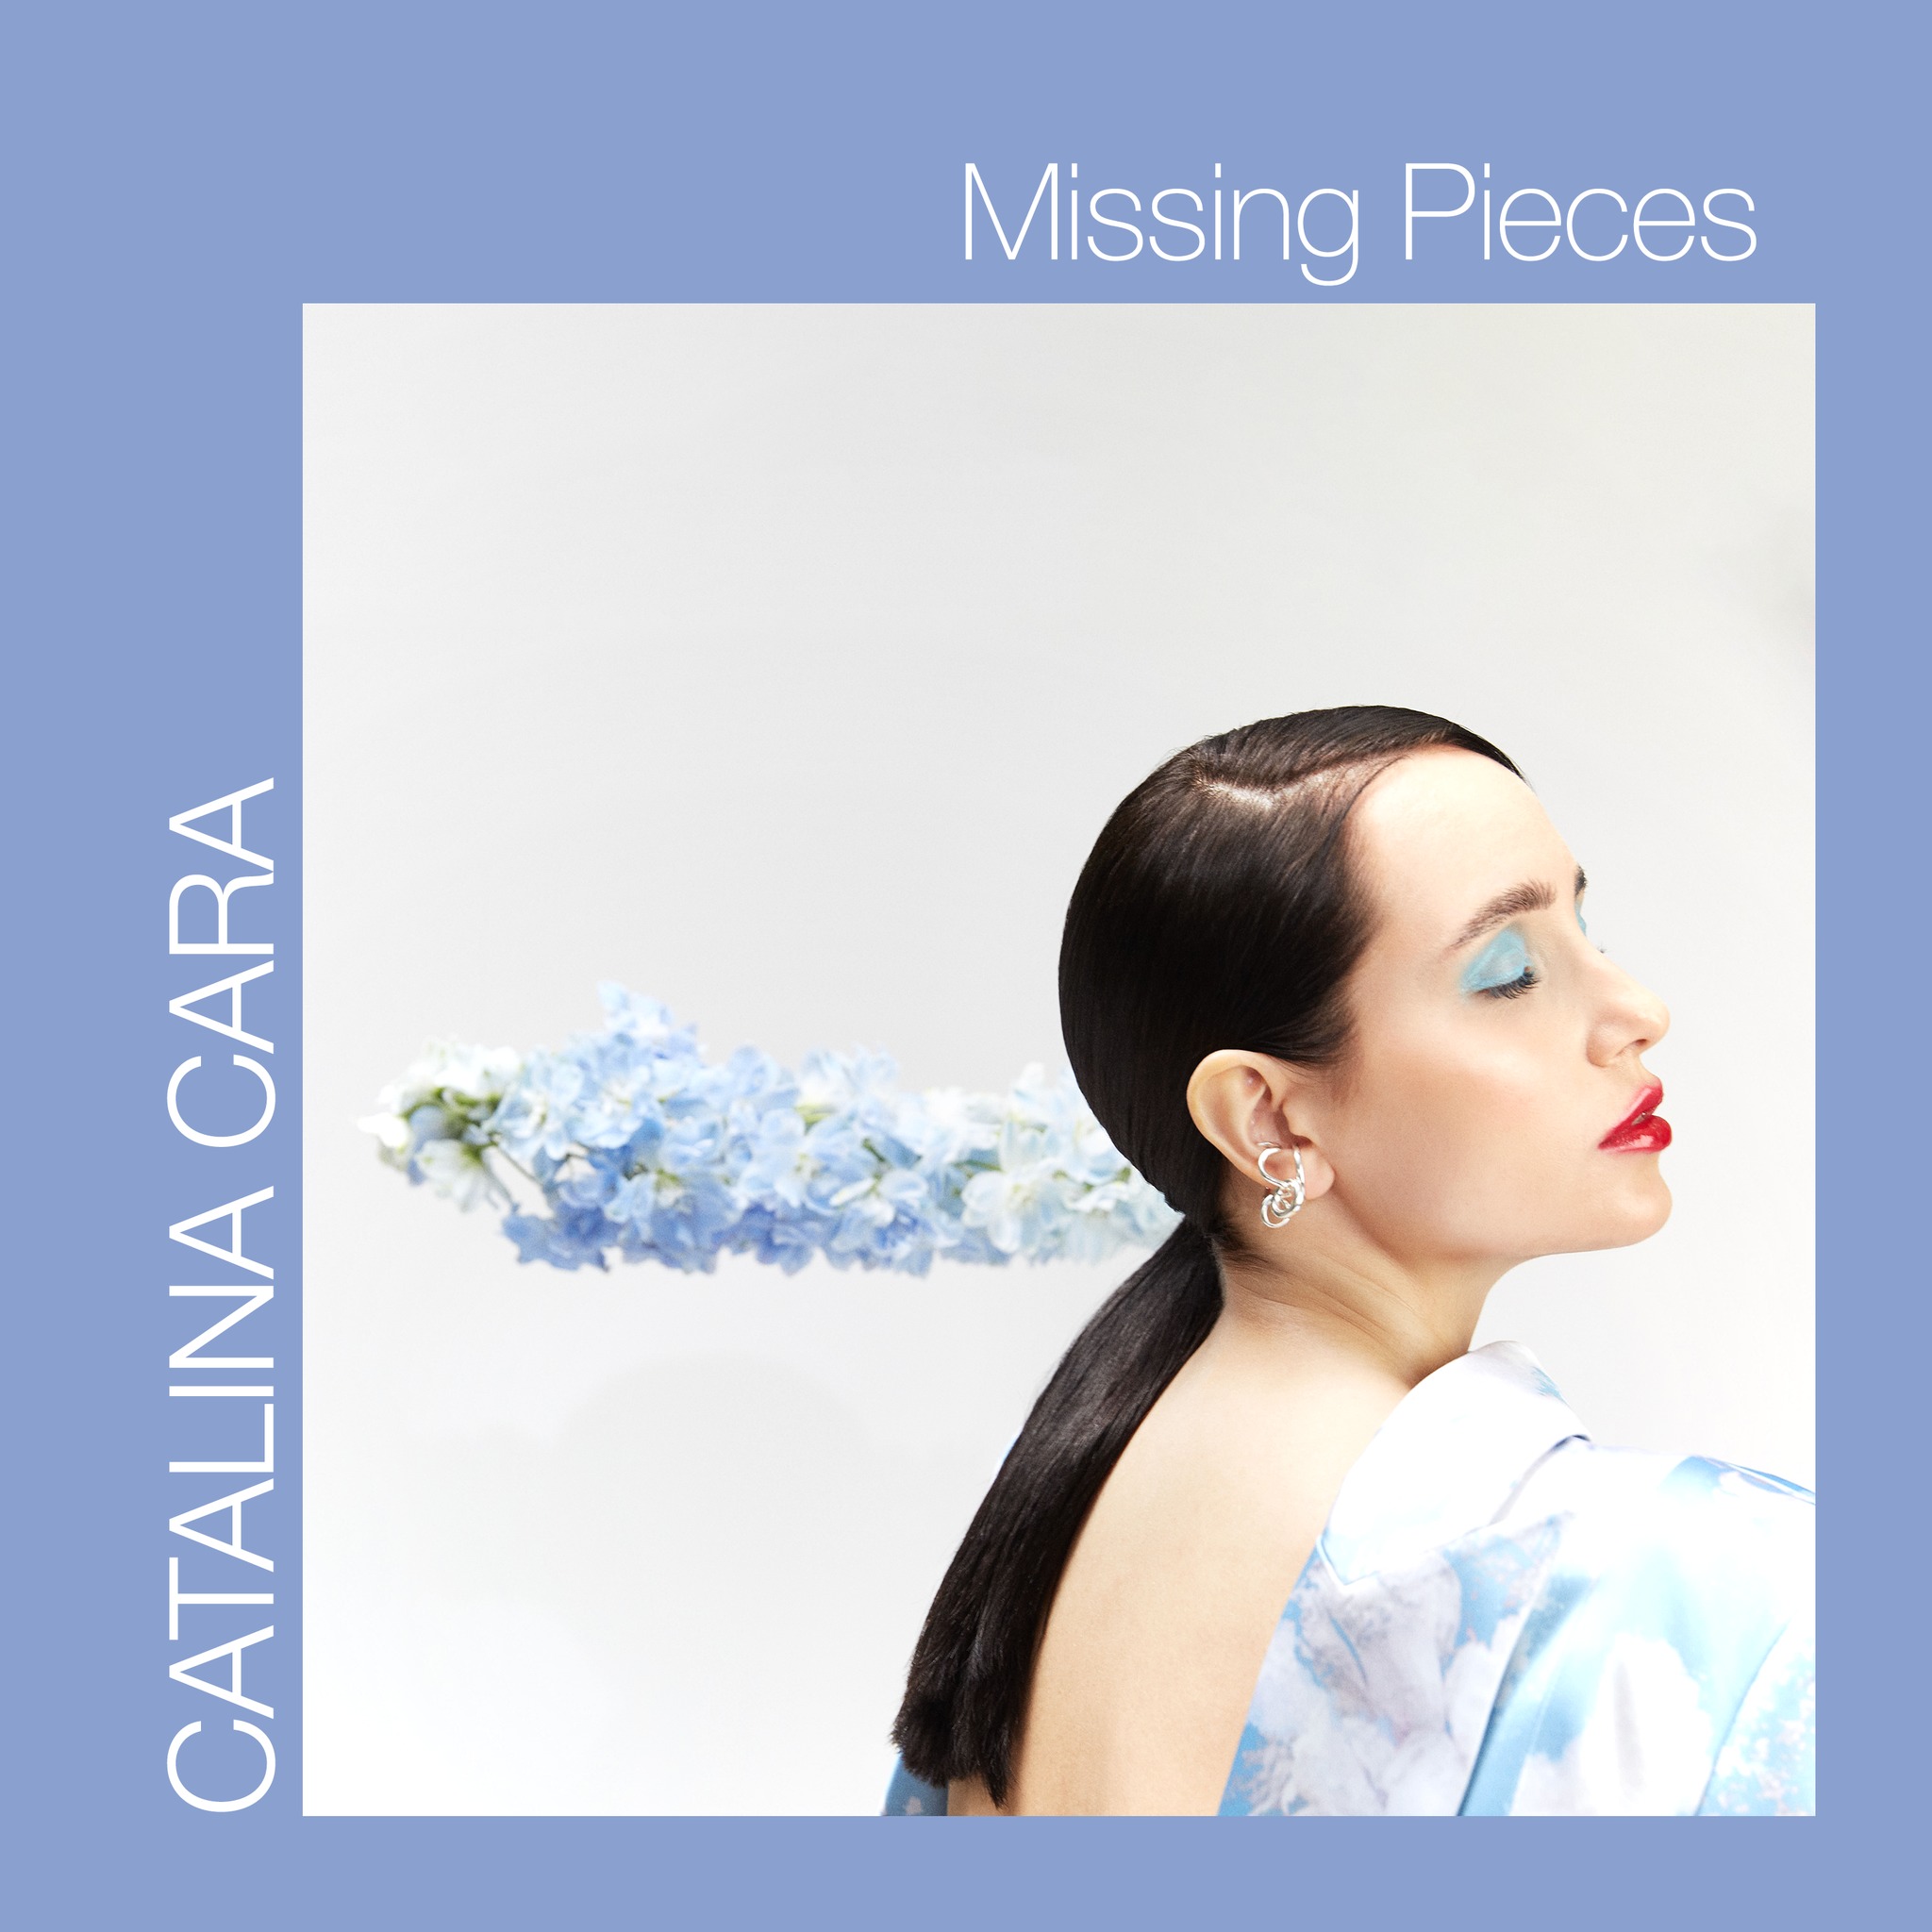 catalina cara - missing pieces